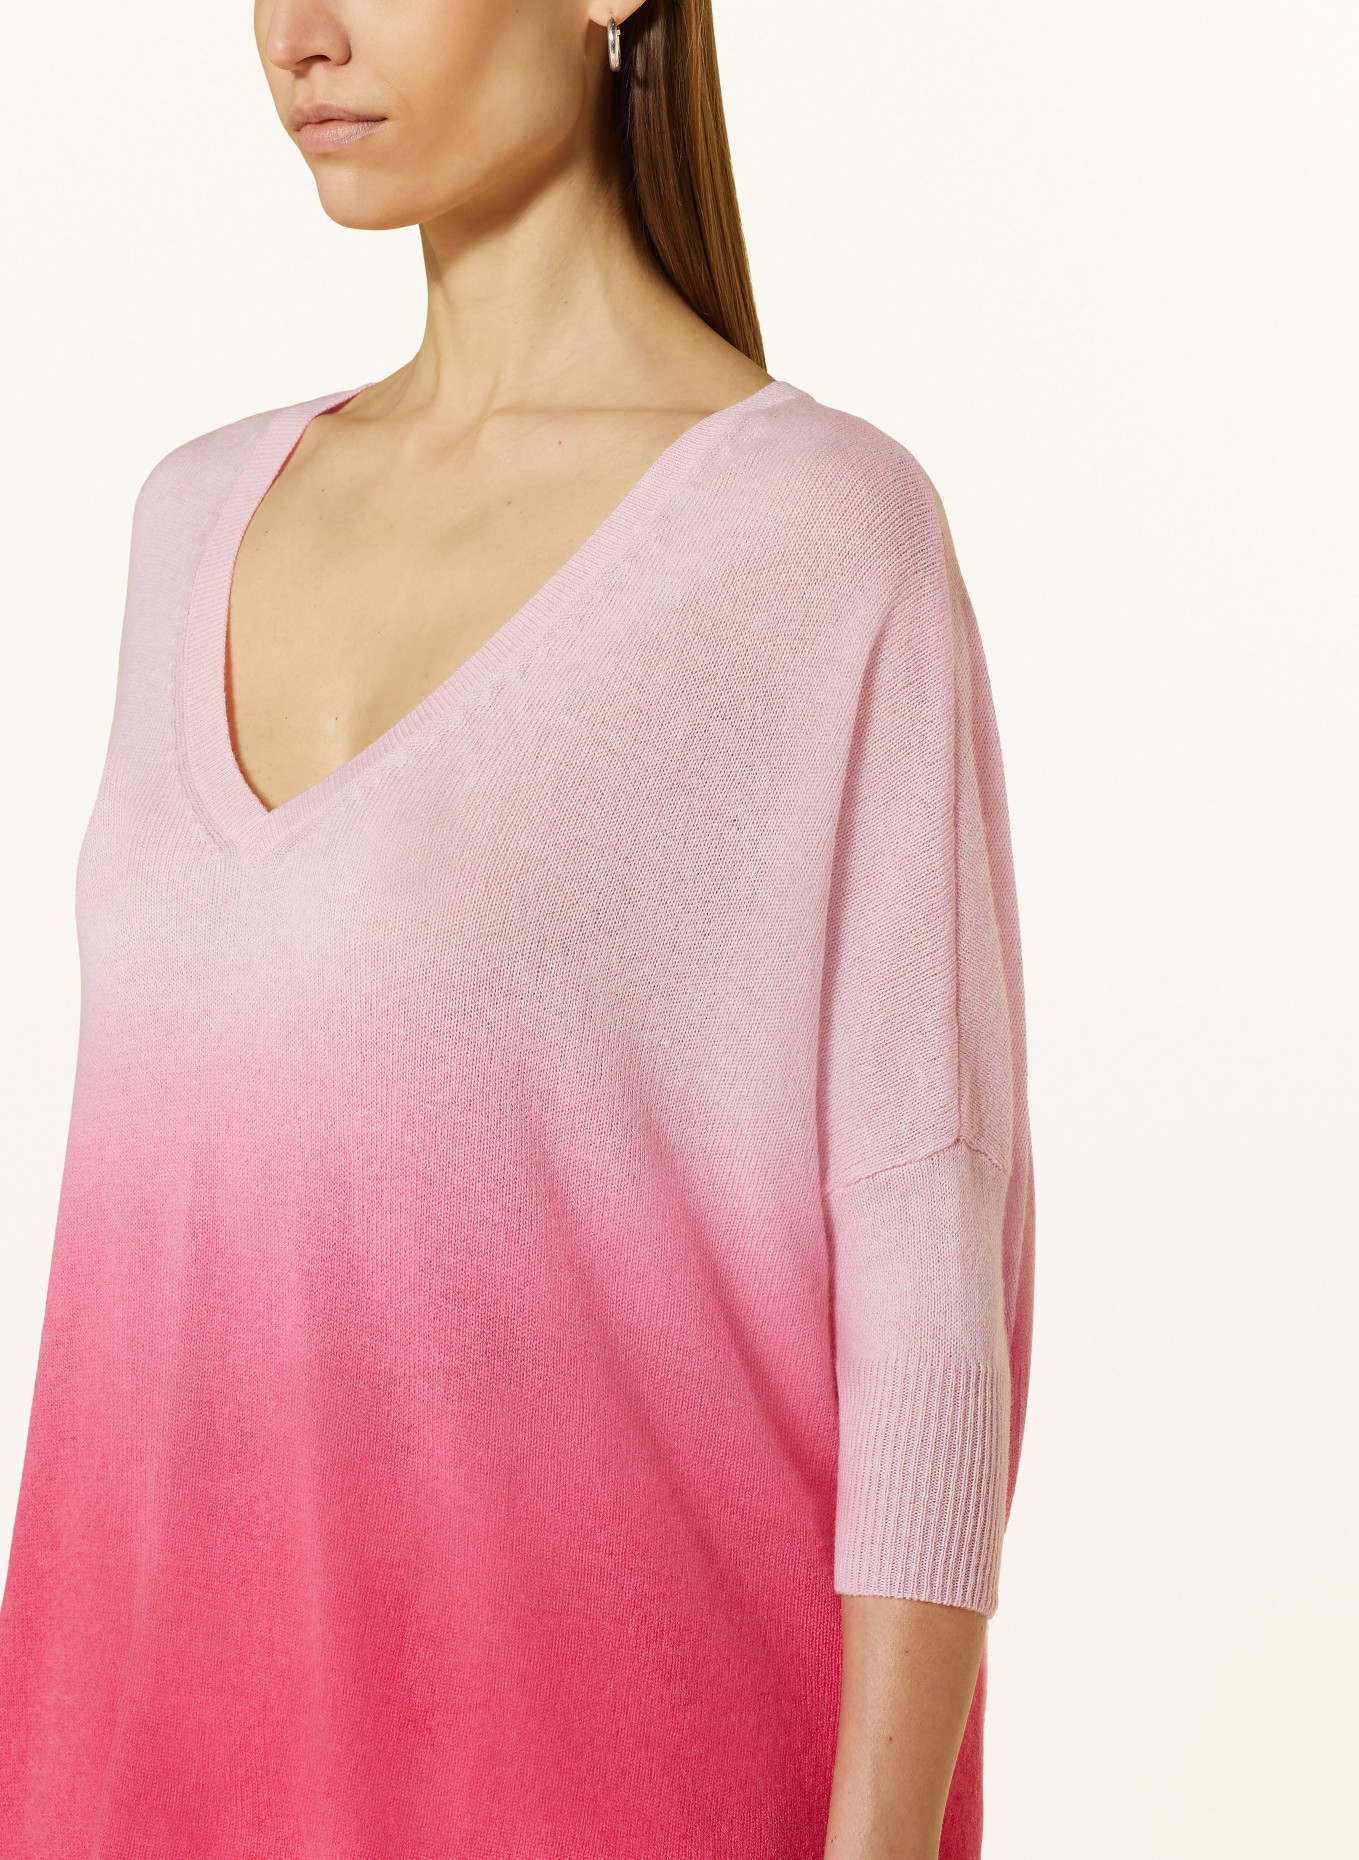 KUJTEN Cashmere-Pullover MINI, Farbe: HELLROSA/ PINK (Bild 4)